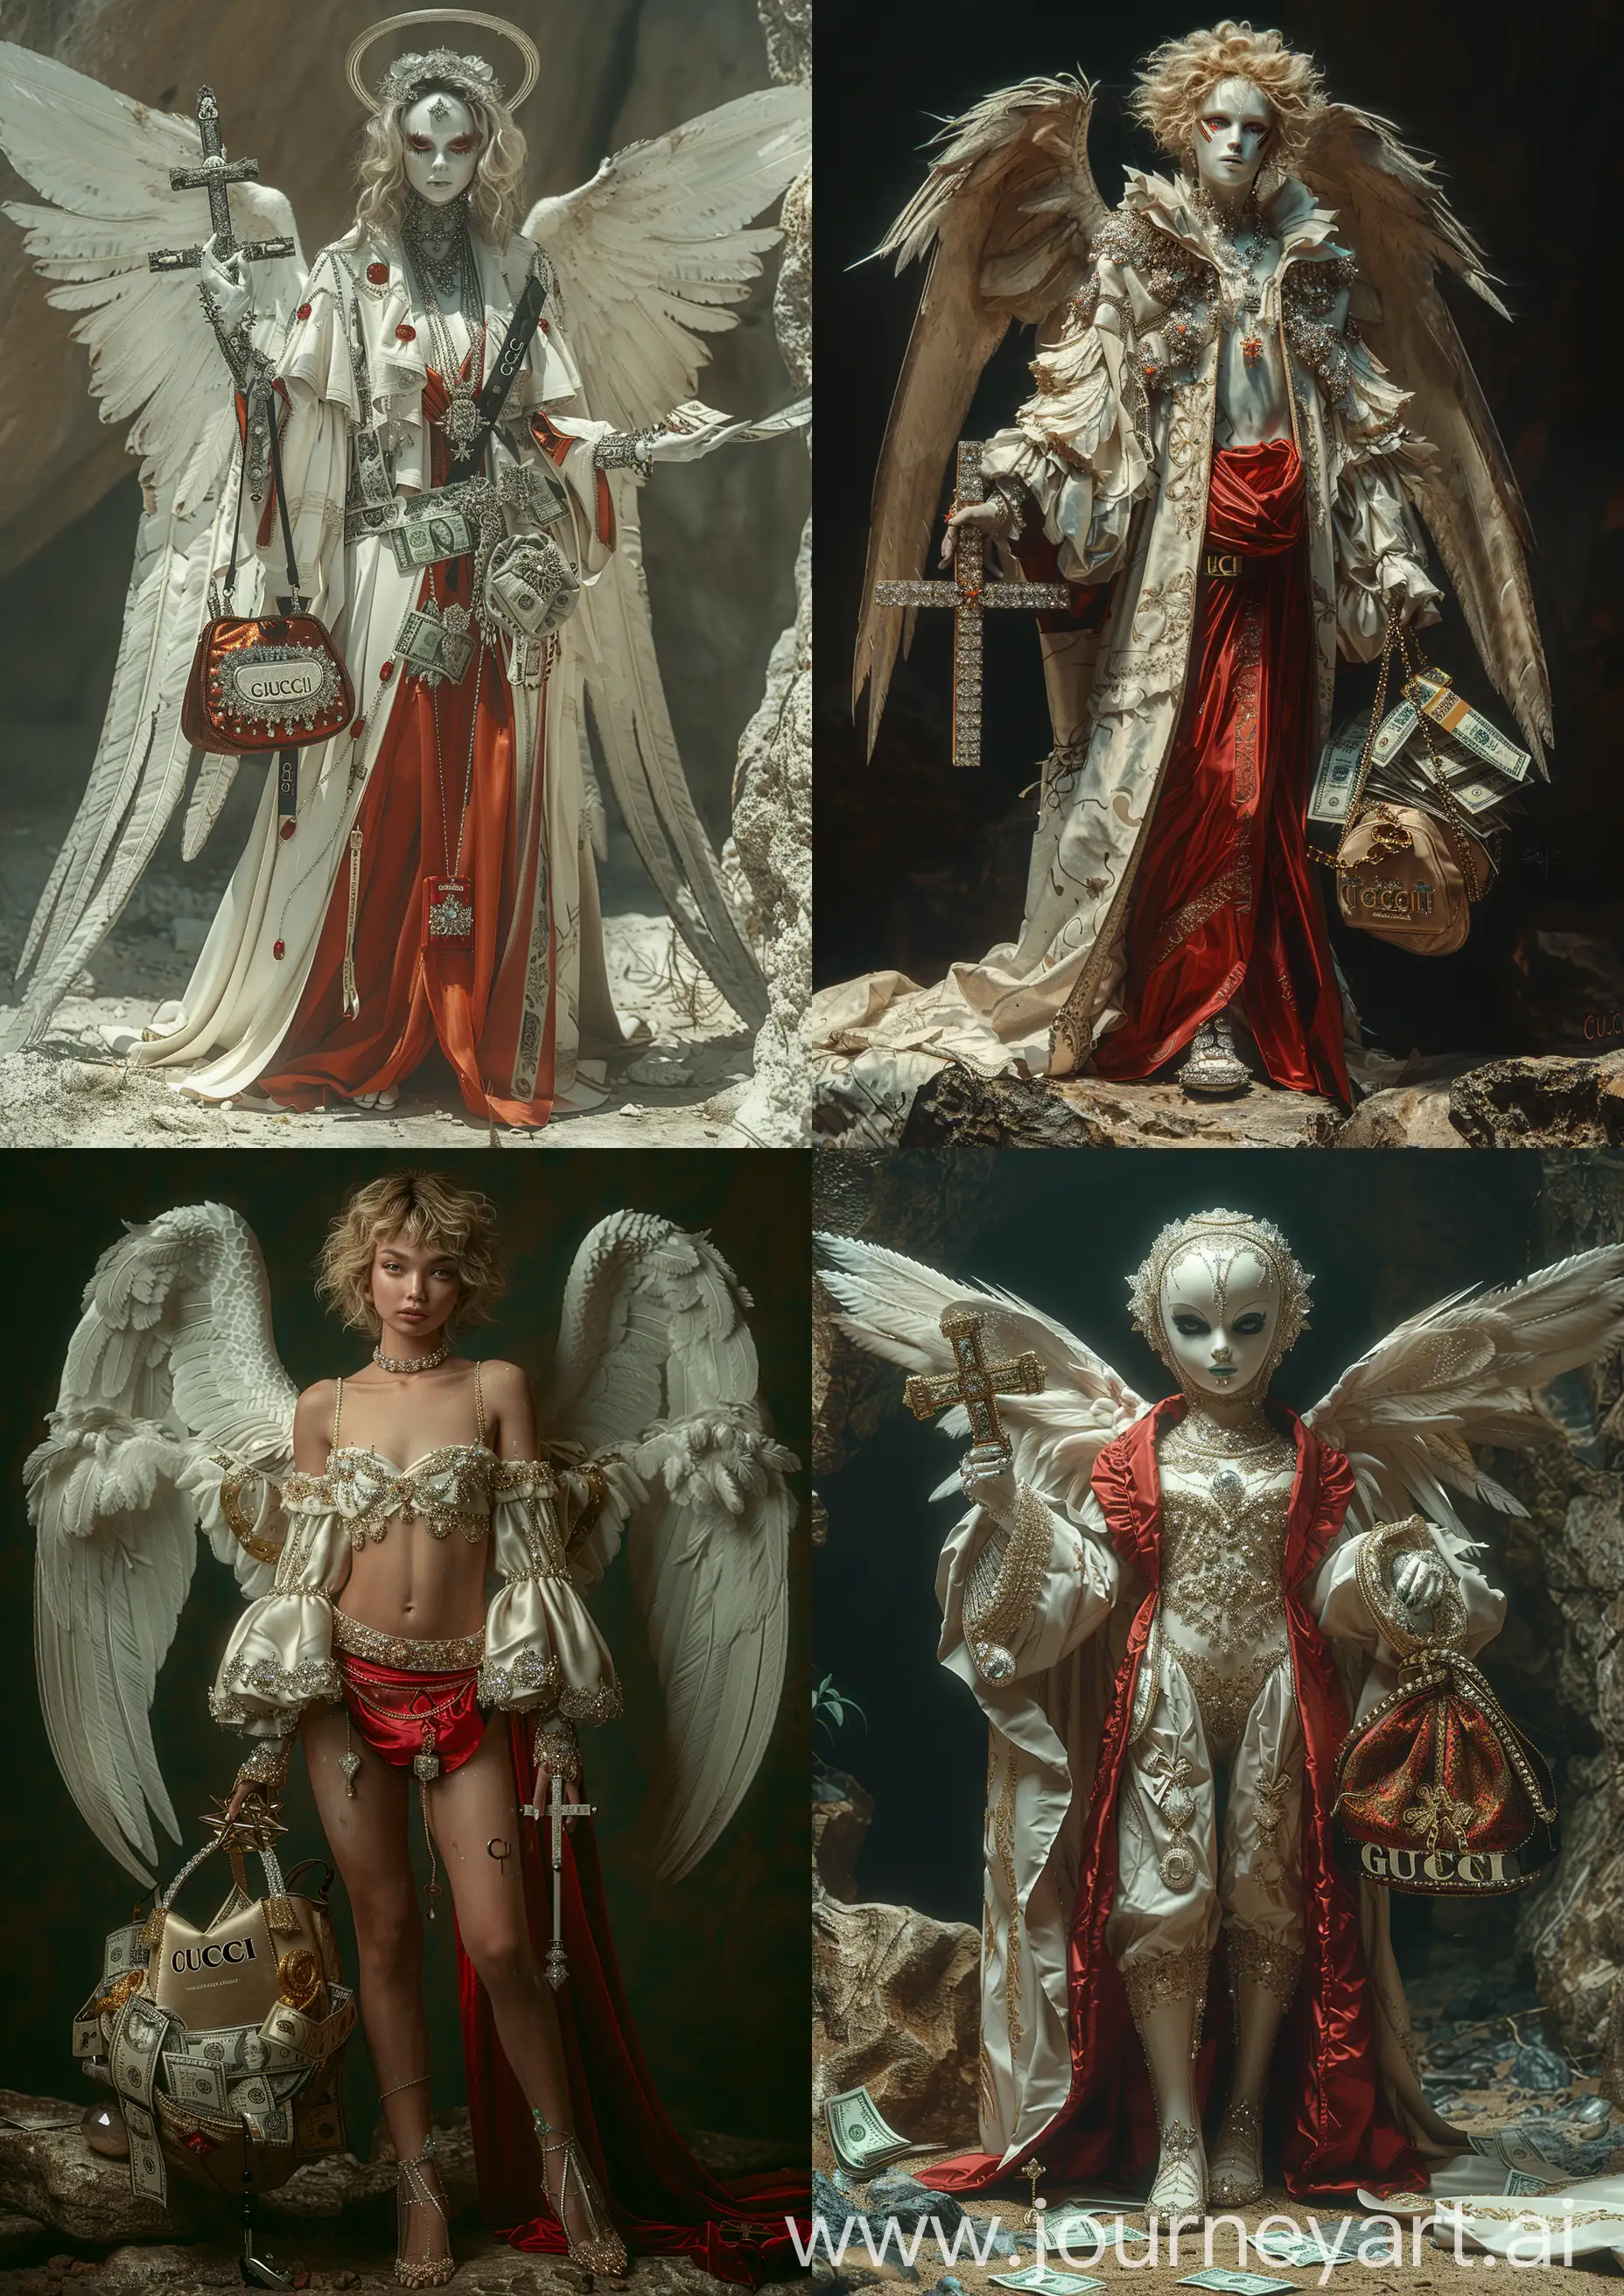 Futuristic-Rococo-Angel-with-Diamond-Adornments-and-GUCCI-Bag